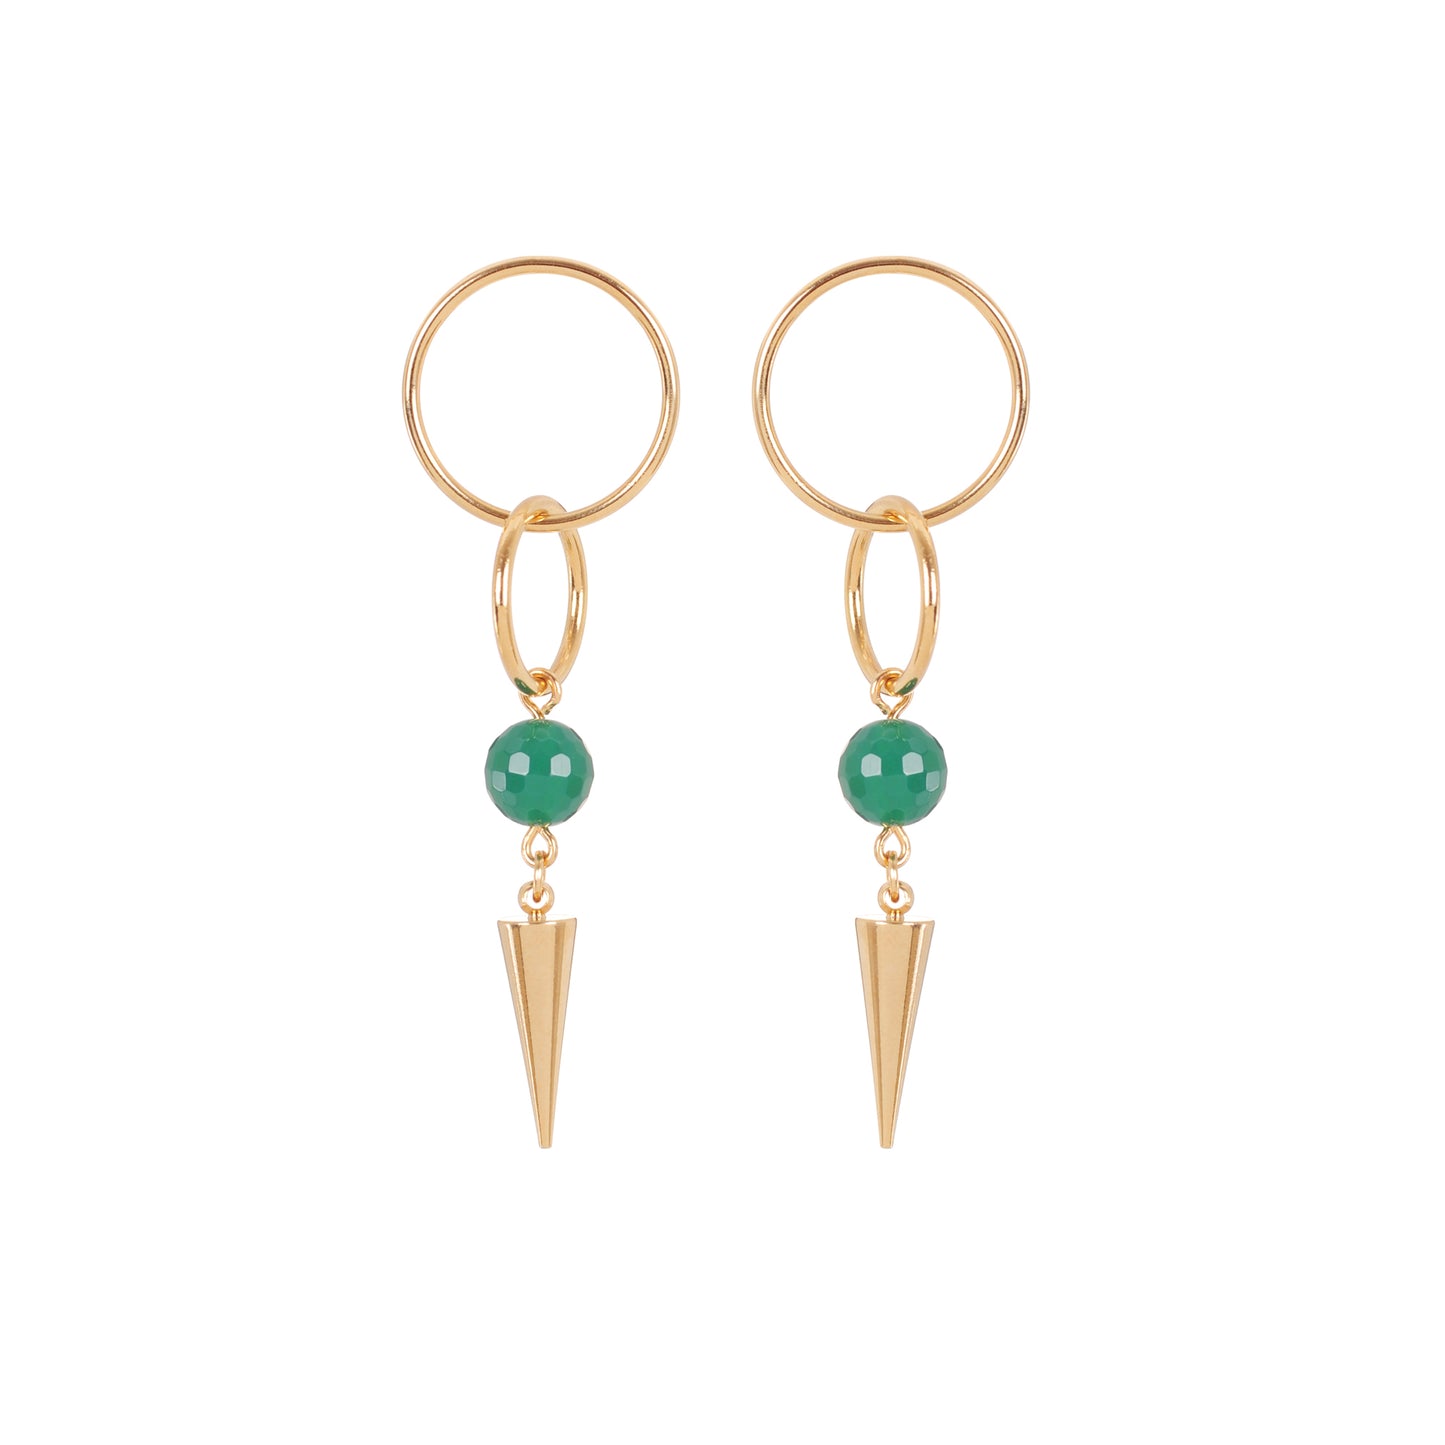 Boucles d'oreilles pendantes composées d'anneaux d'une bille en pierre vert et d'un pic pour un look glam rock